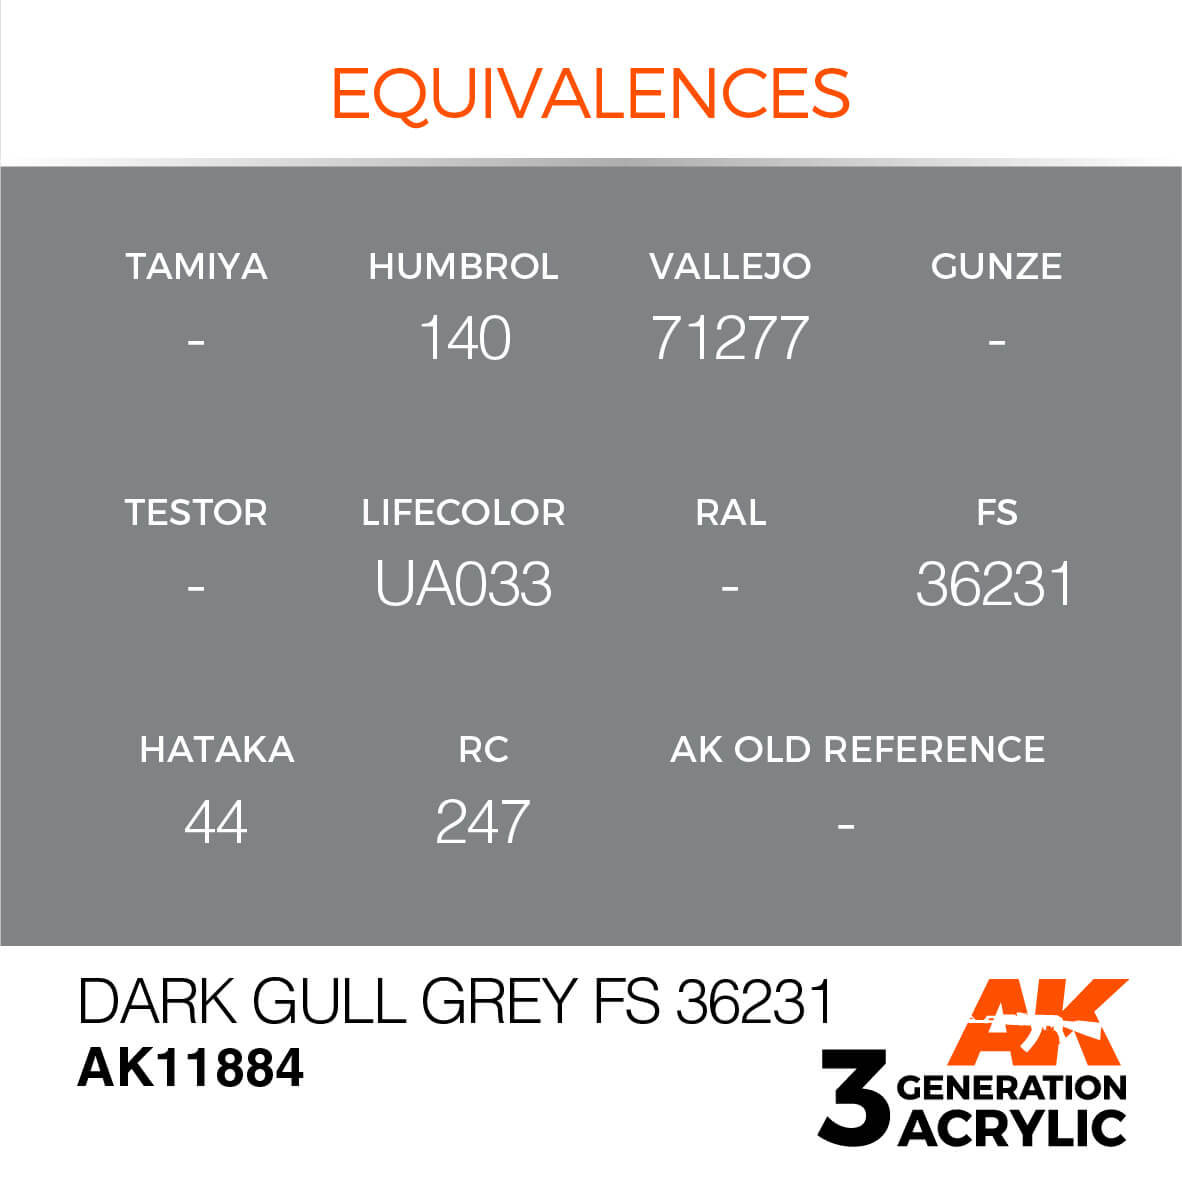 AK DARK GULL GREY FS 36231 – AIR 17ml